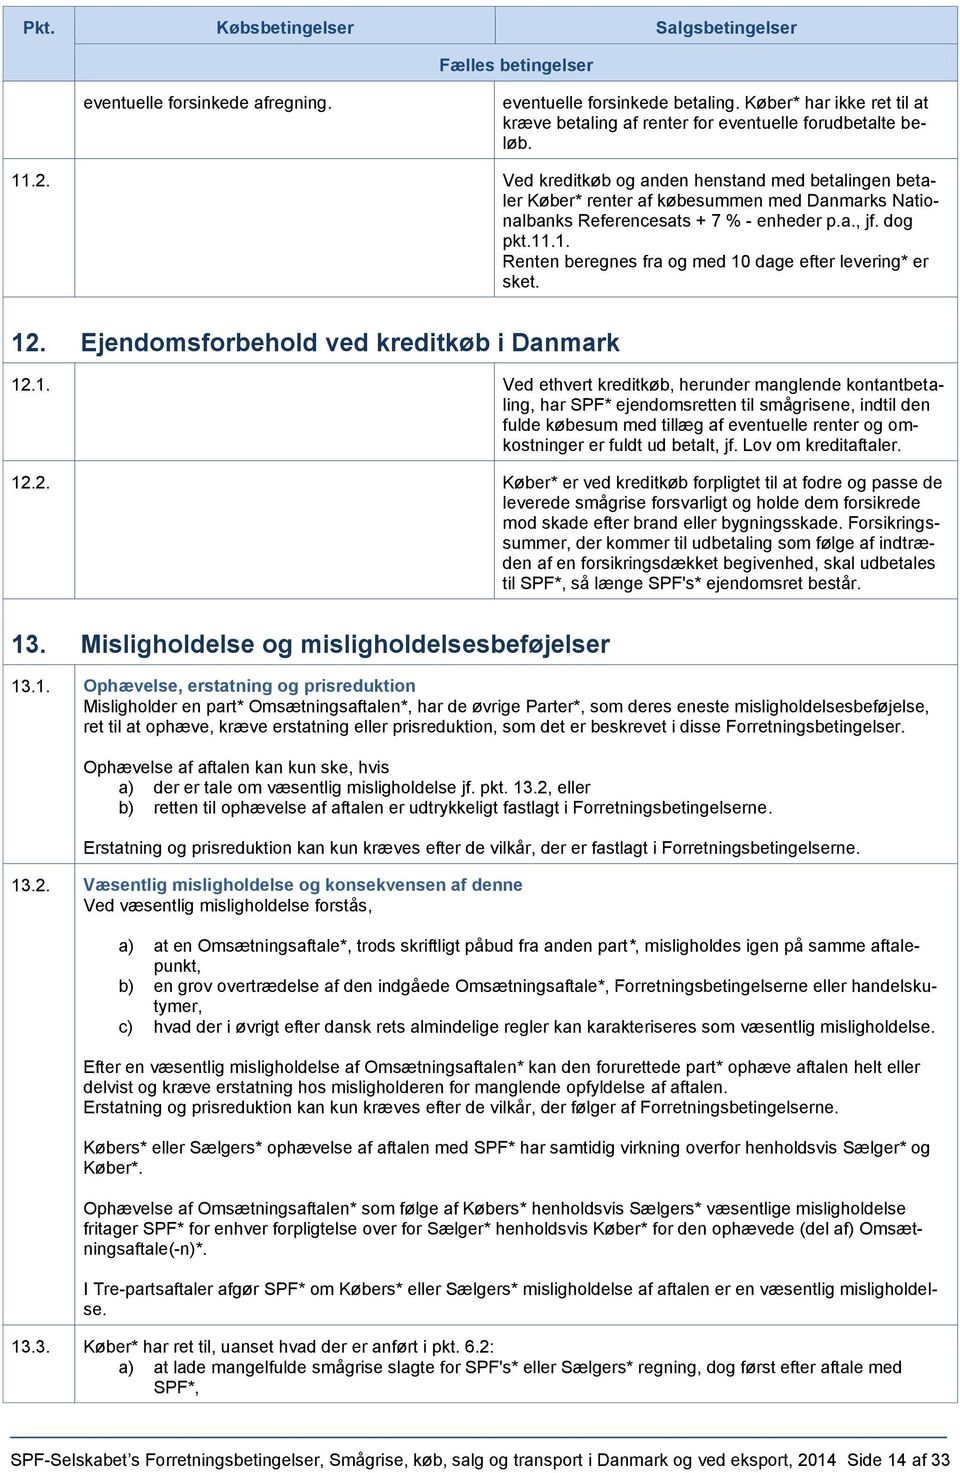 Ved kreditkøb og anden henstand med betalingen betaler Køber* renter af købesummen med Danmarks Nationalbanks Referencesats + 7 % - enheder p.a., jf. dog pkt.11